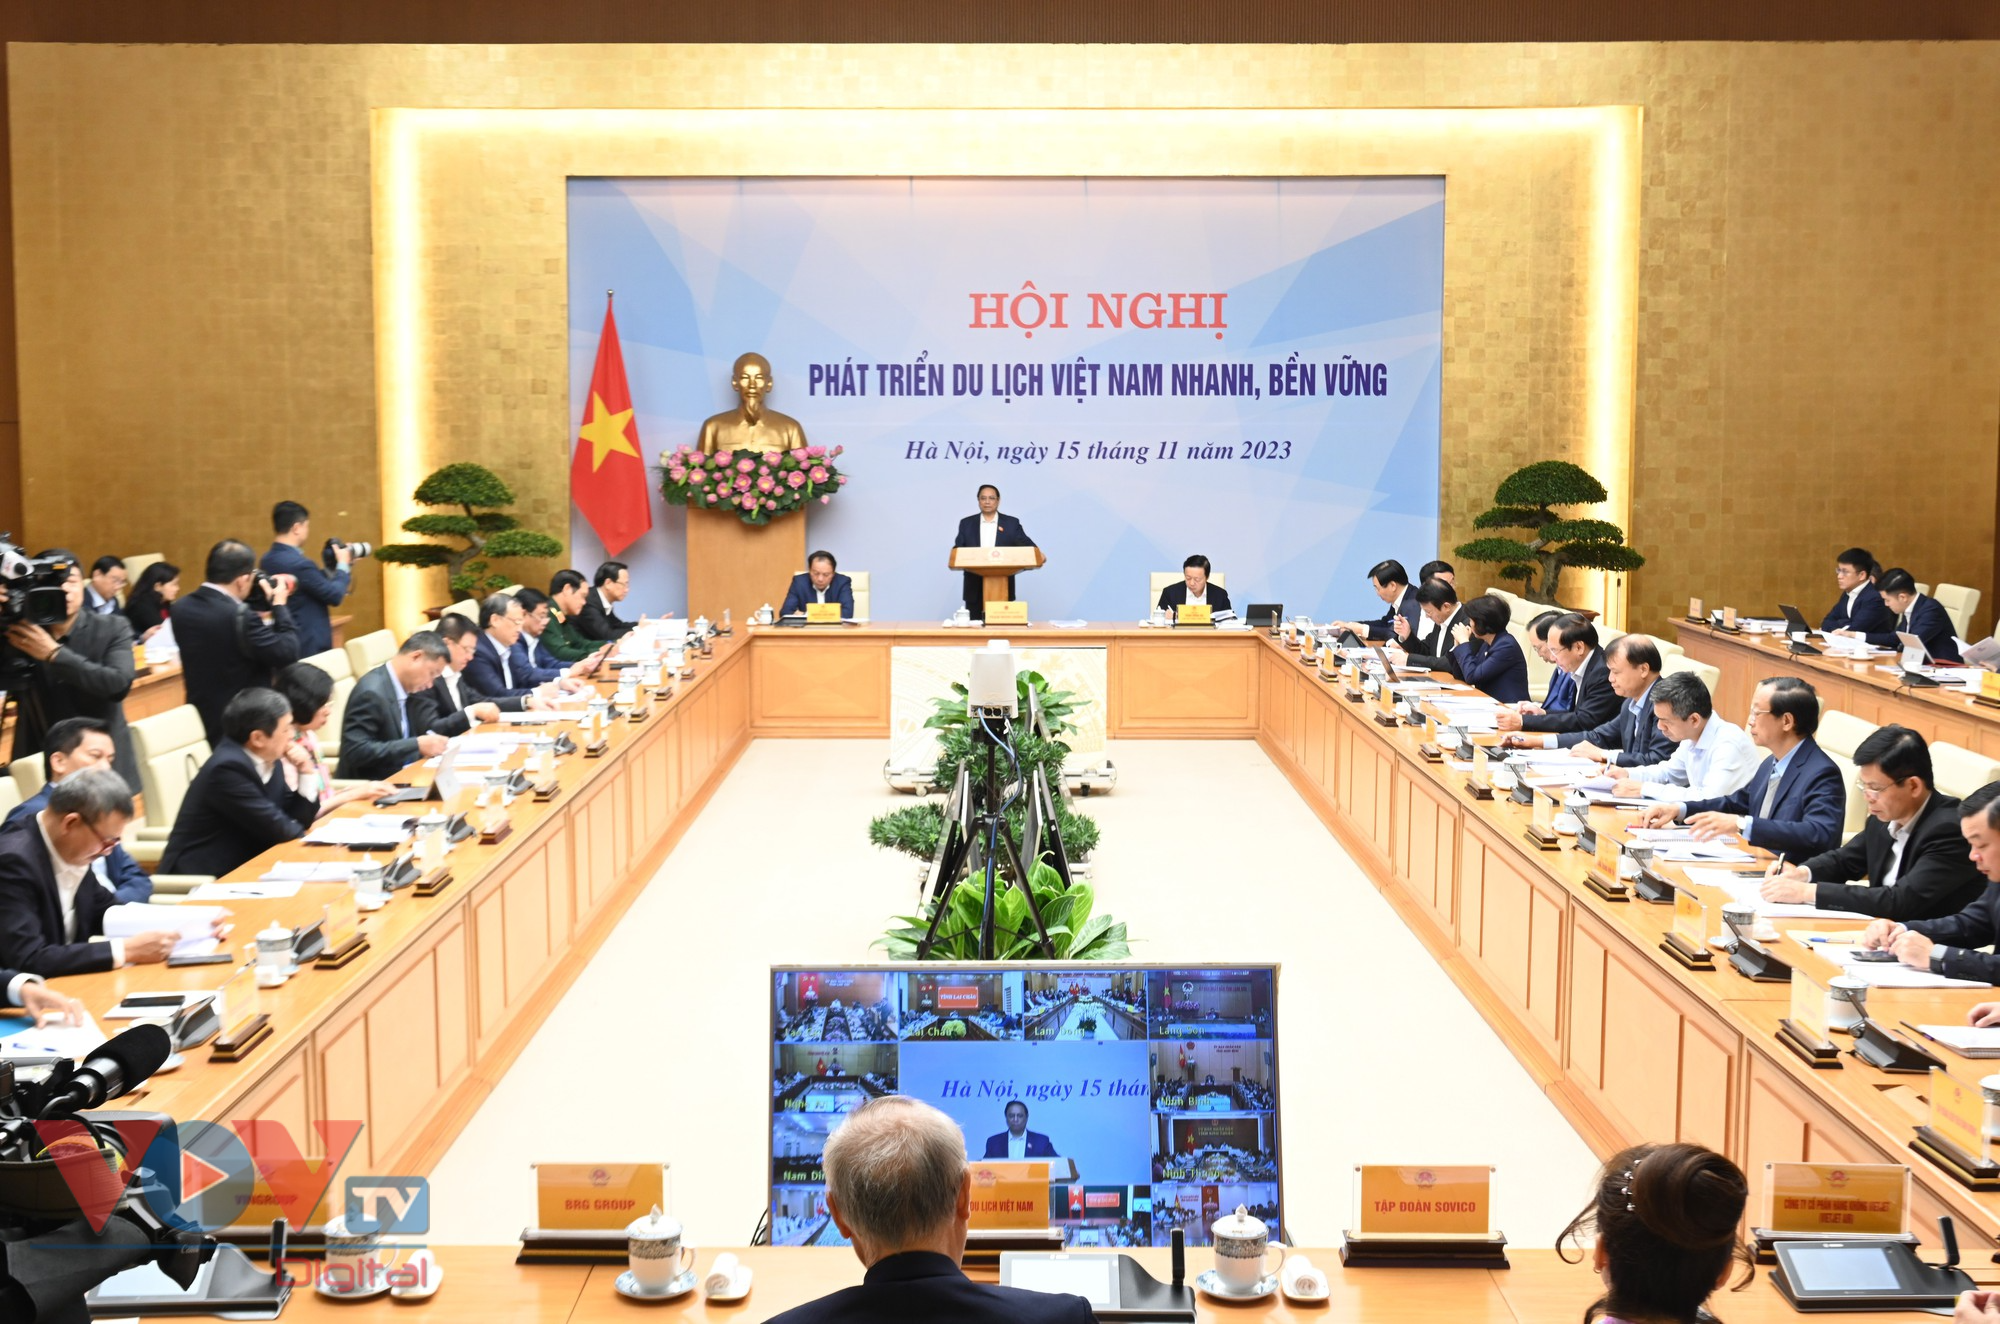 Thủ tướng: Tìm lời giải phát triển du lịch Việt Nam nhanh và bền vững- Ảnh 5.